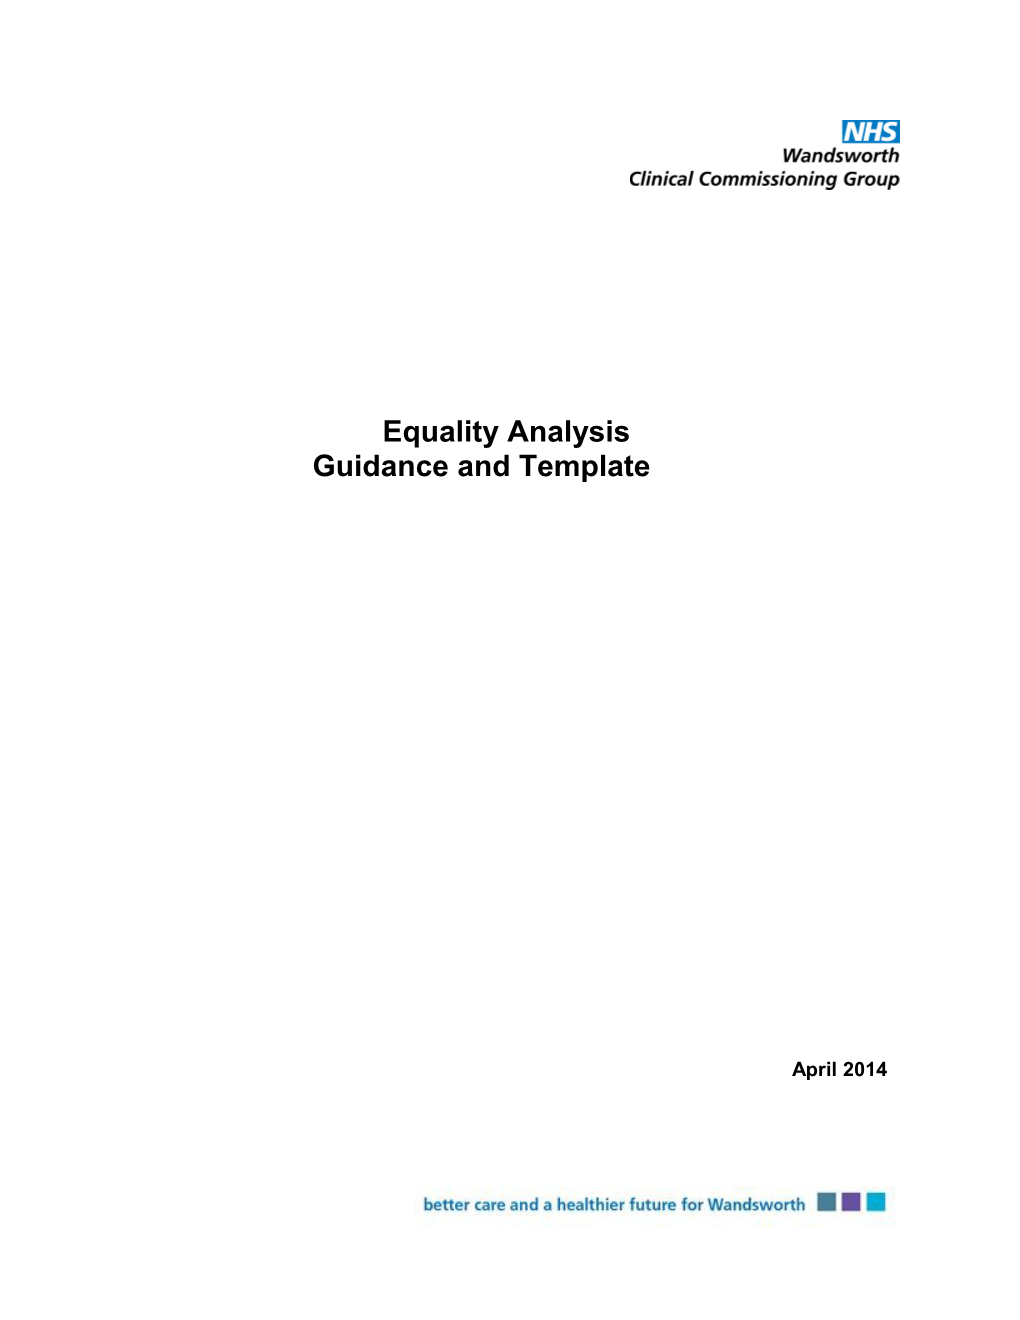 Equality Analysis Guidance